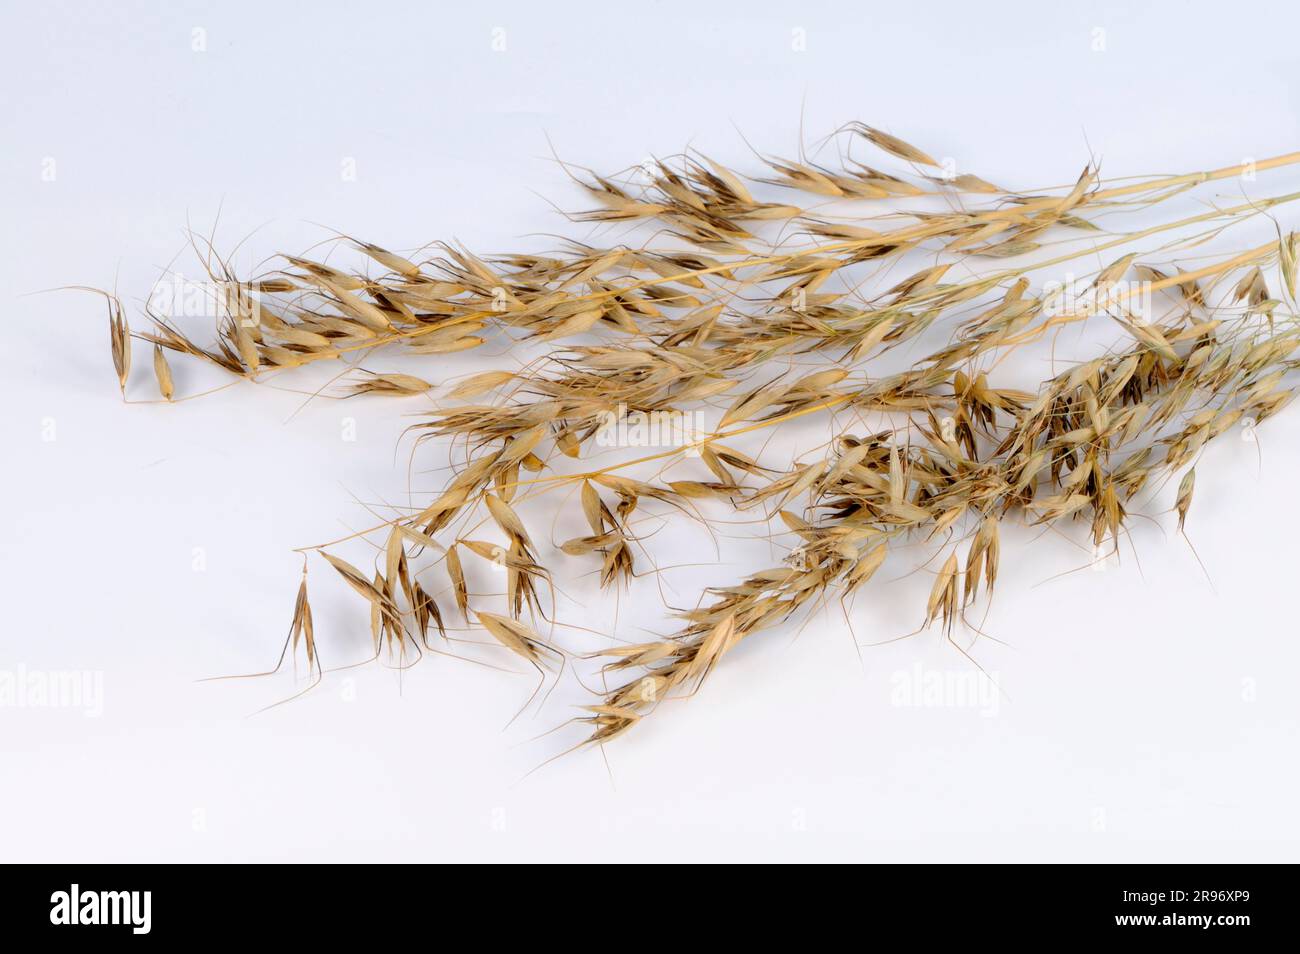 Common oats (Avena strigosa strigosa) Stock Photo